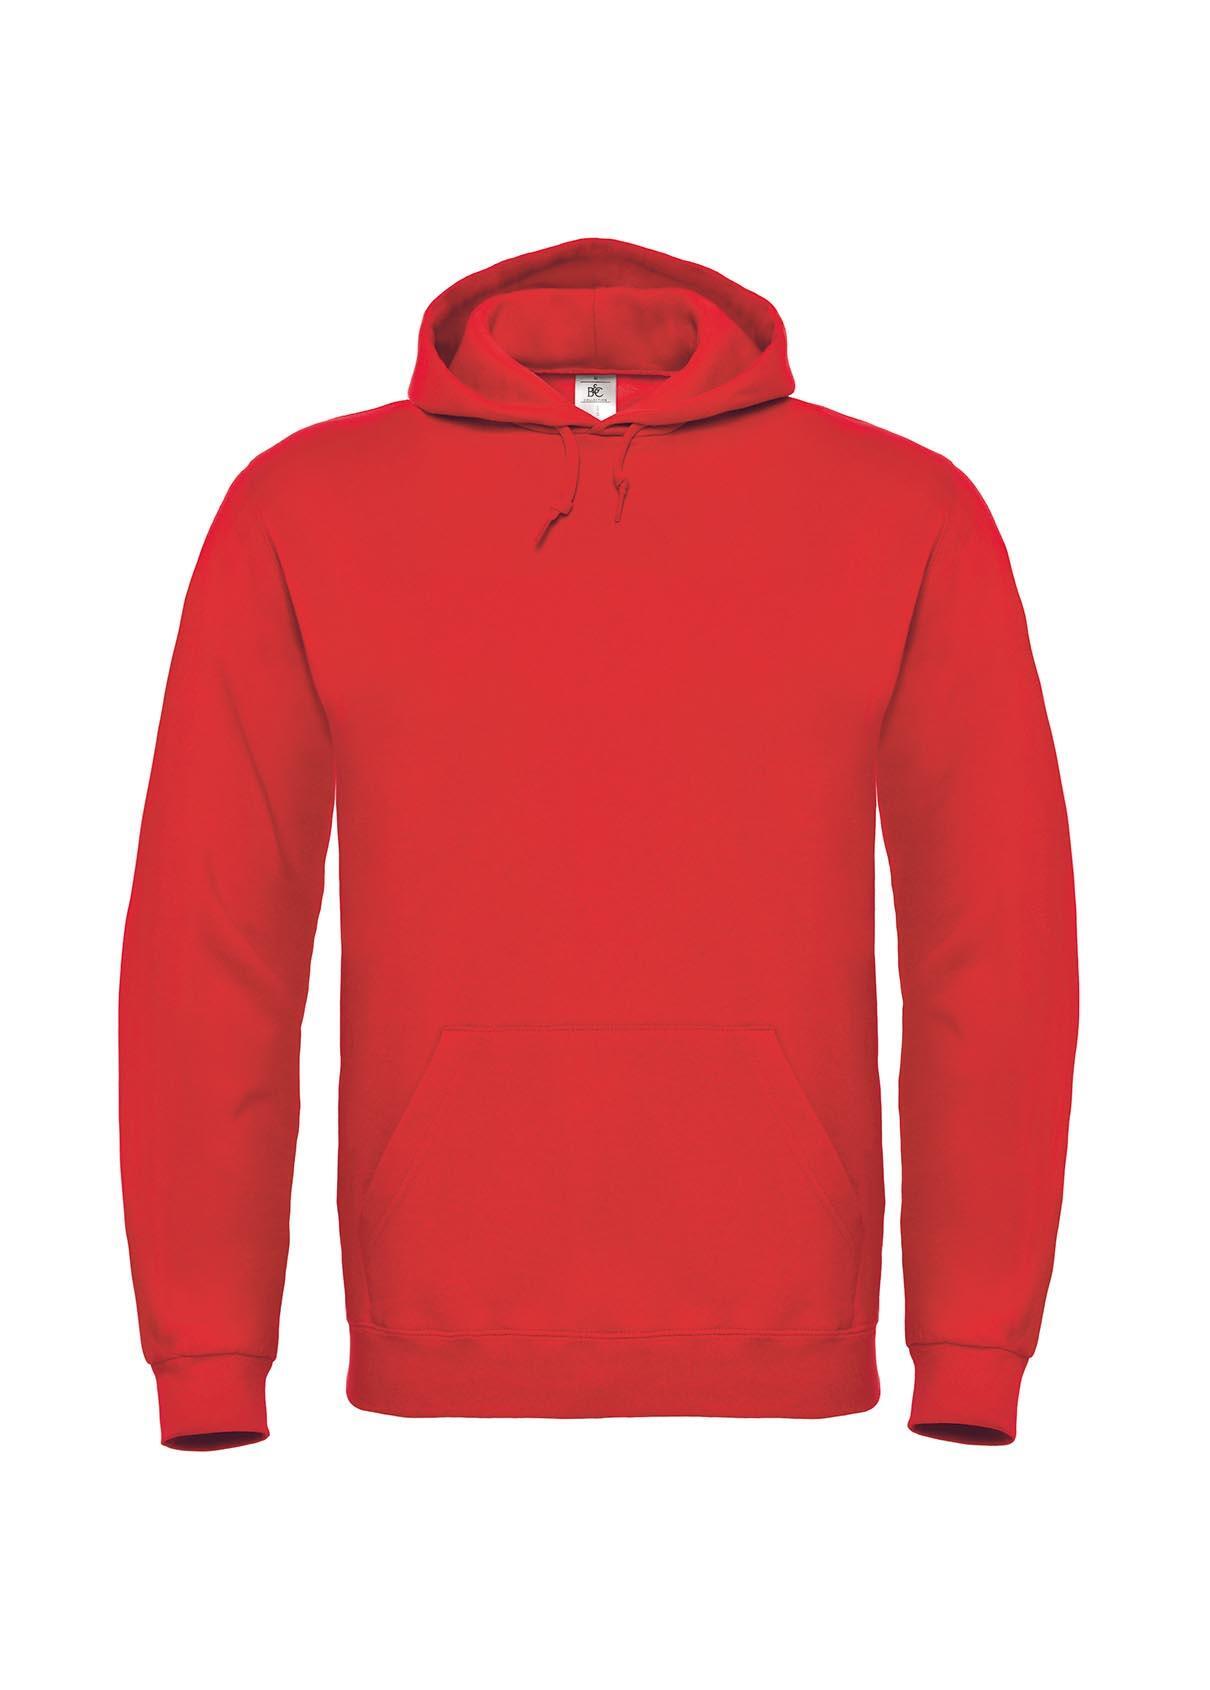 Rode Hoodie sweater voor mannen bedrukbaar